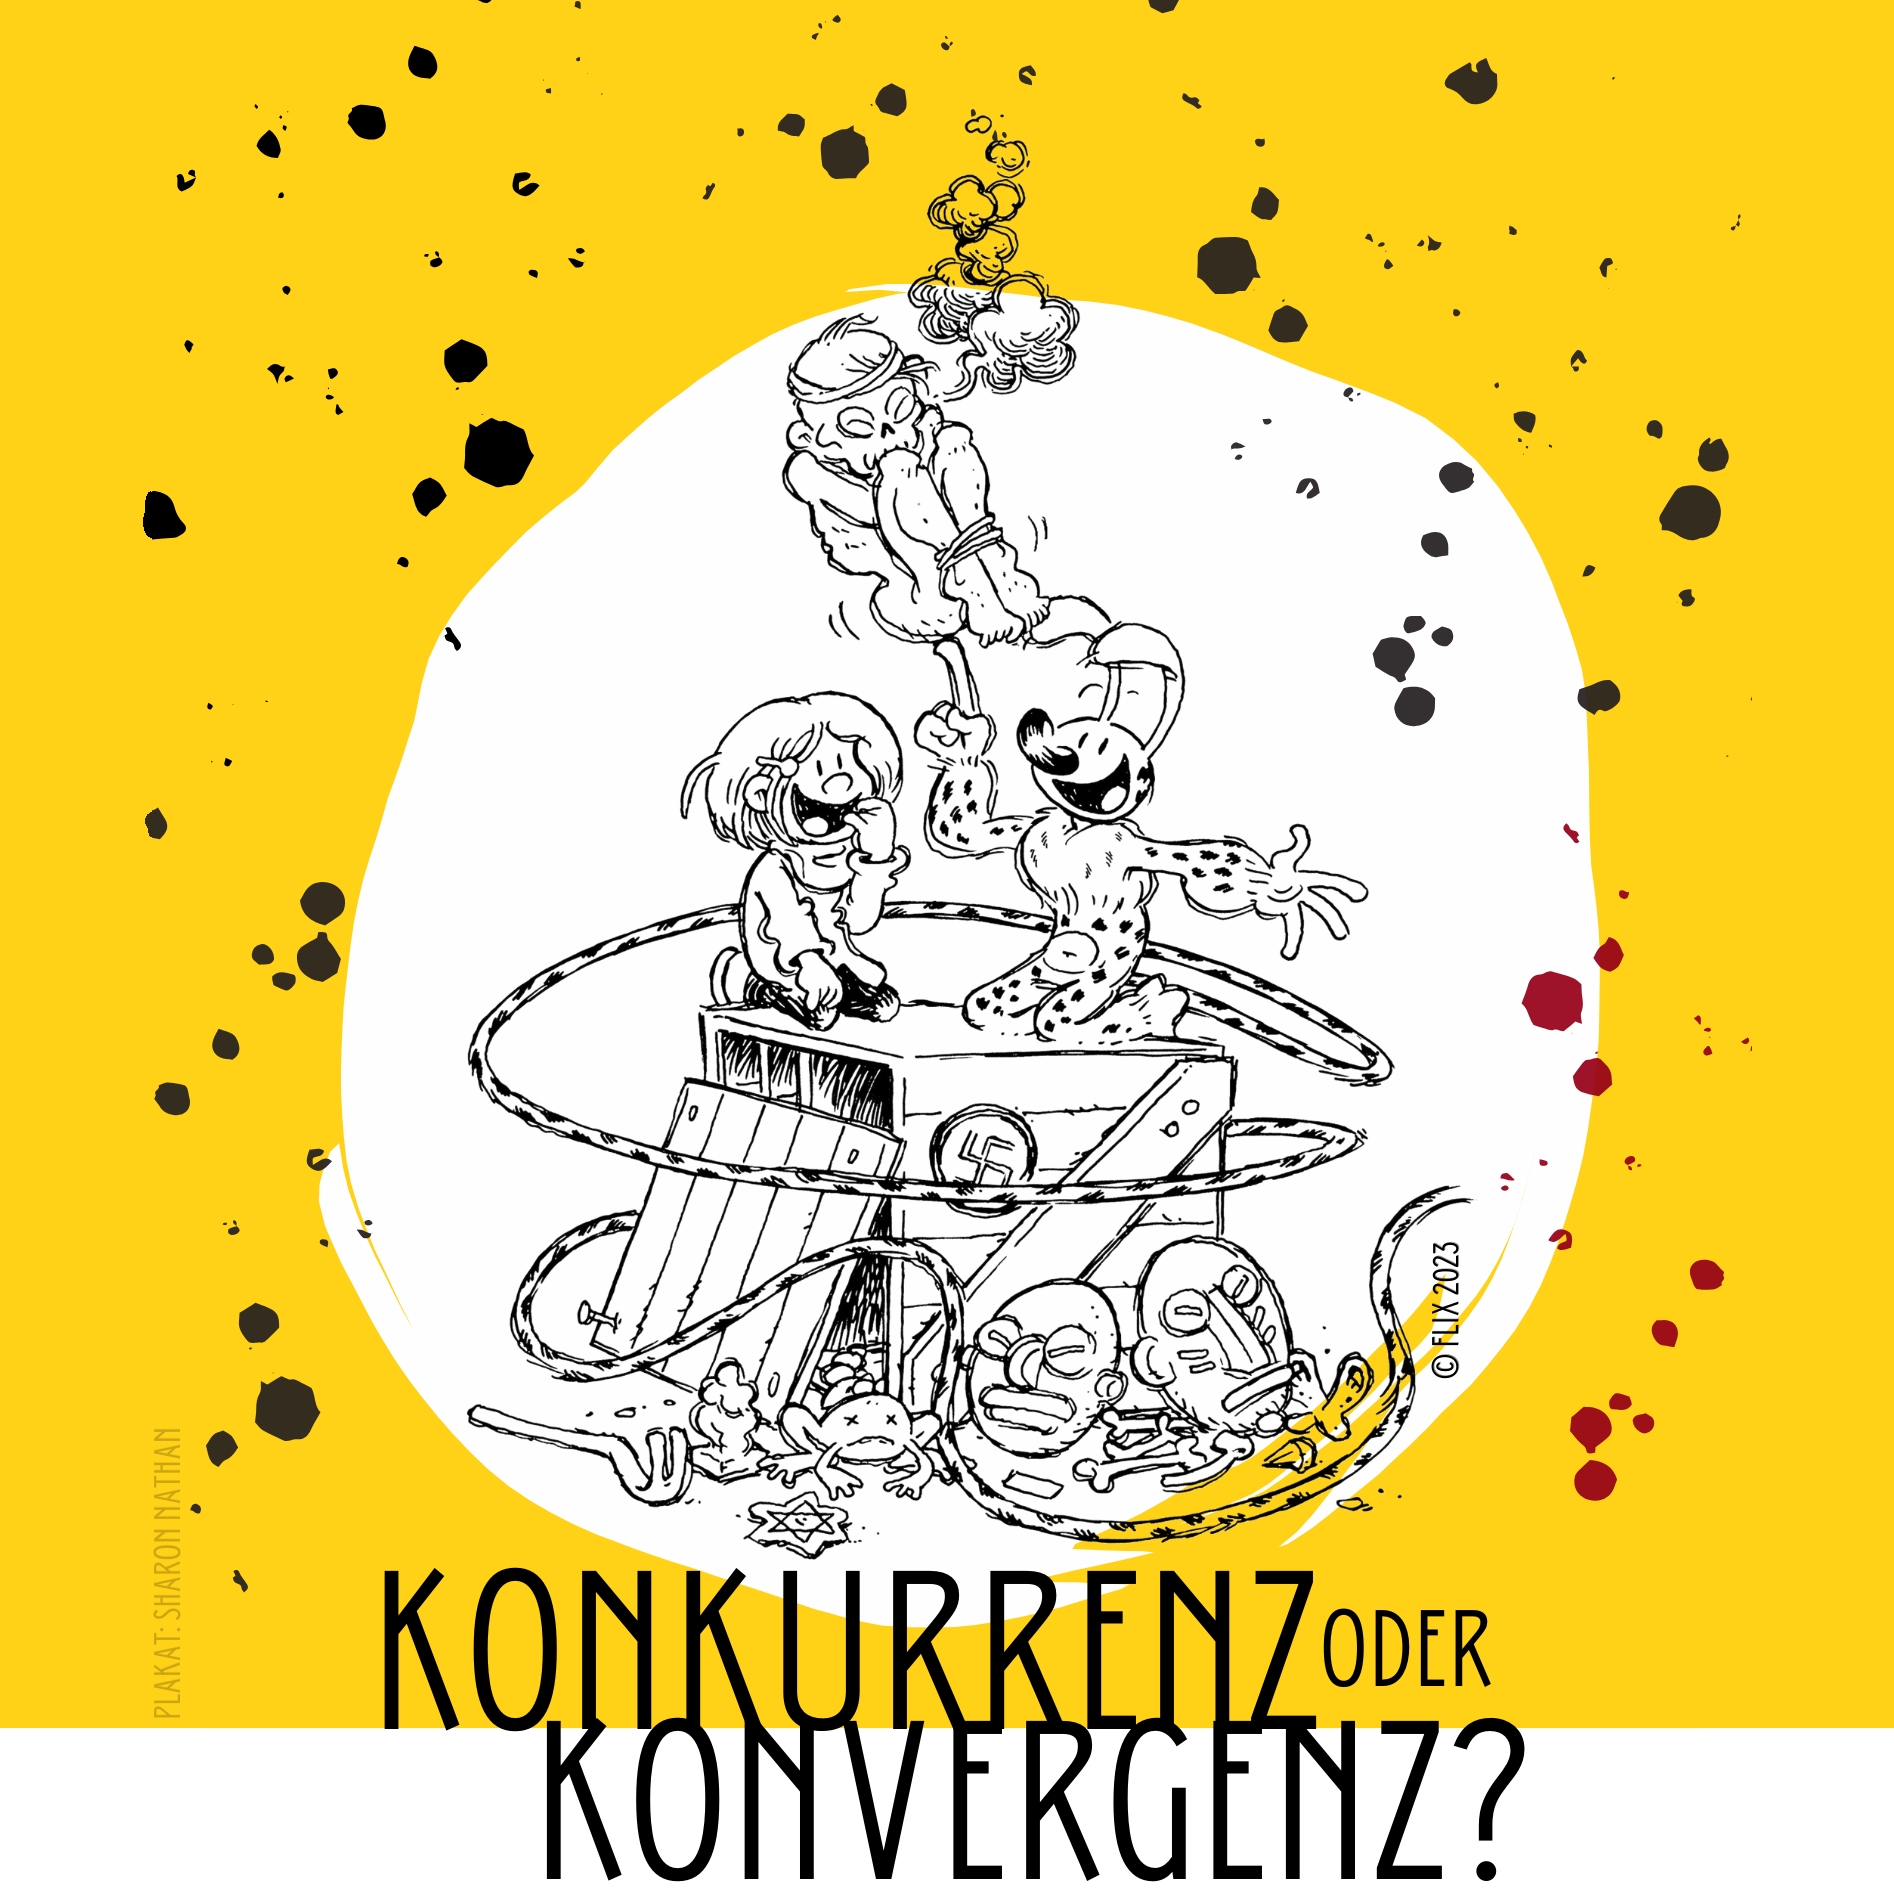 Plakat des Workshops "Konkurrenz oder Konvergenz" mit einer Zeichnung des Marsupilamis inmitten (kolonial)historischer Symbole